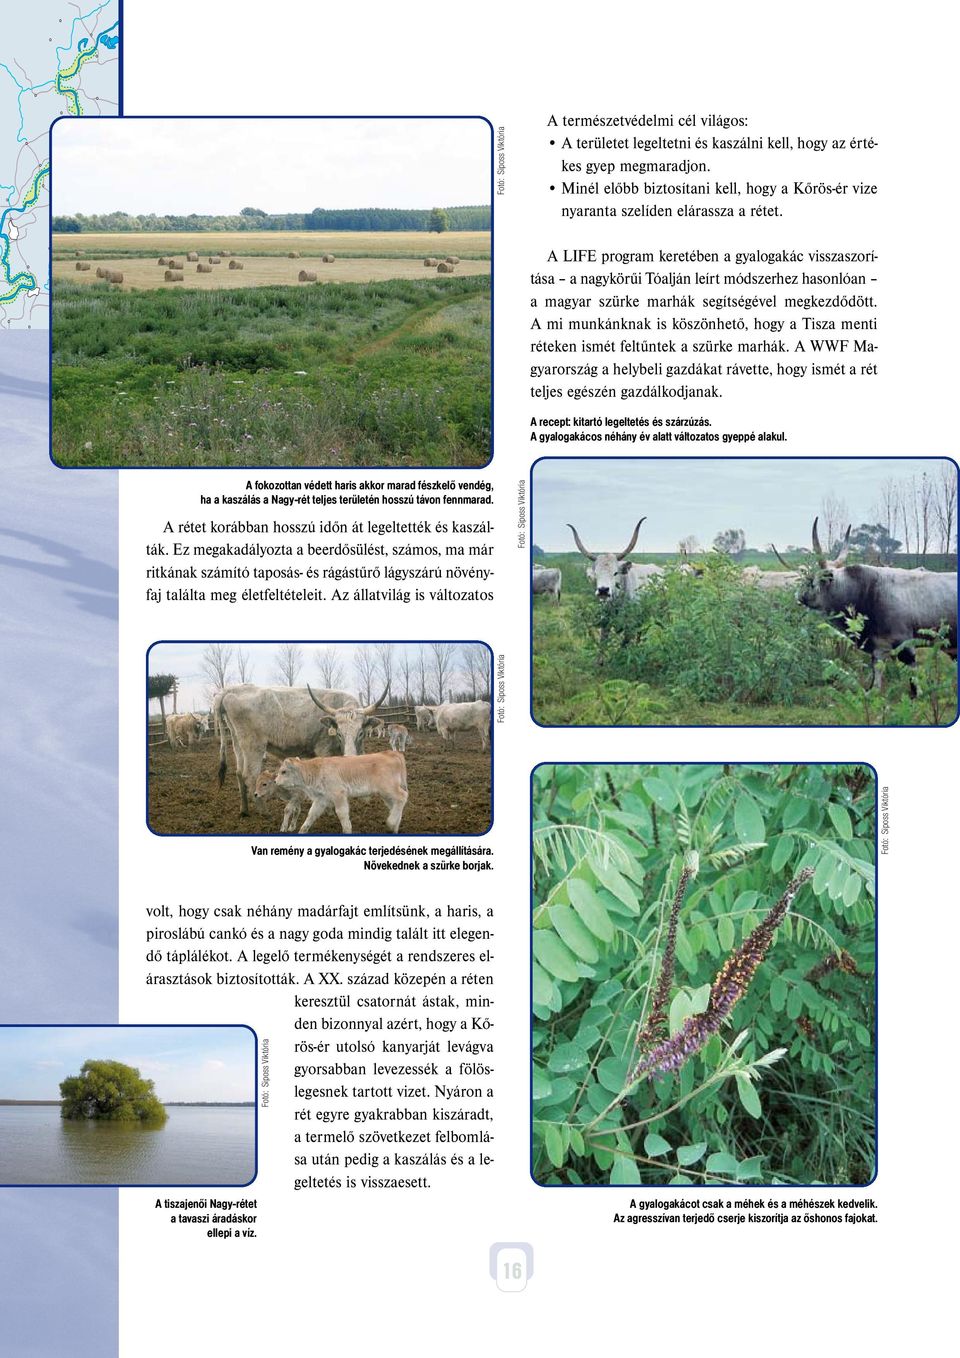 A mi munkánknak is köszönhető, hogy a Tisza menti réteken ismét feltűntek a szürke marhák. A WWF Magyarország a helybeli gazdákat rávette, hogy ismét a rét teljes egészén gazdálkodjanak.